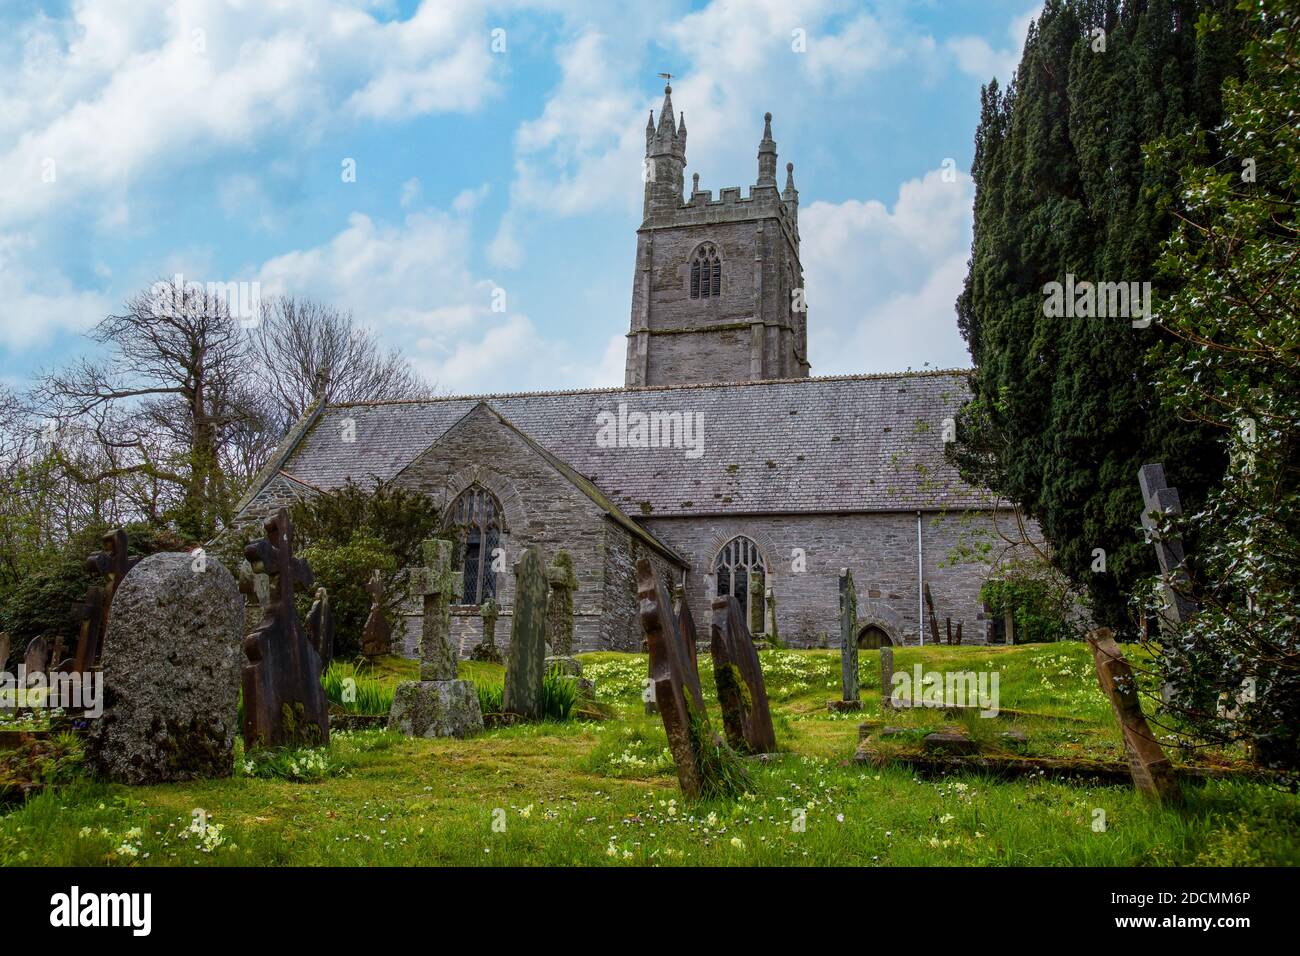 Die St. Mawgan Church ist eine Pfarrkirche aus dem 13. Jahrhundert in North Cornwall, die den Heiligen Mauganus und Nikolaus geweiht ist. Stockfoto